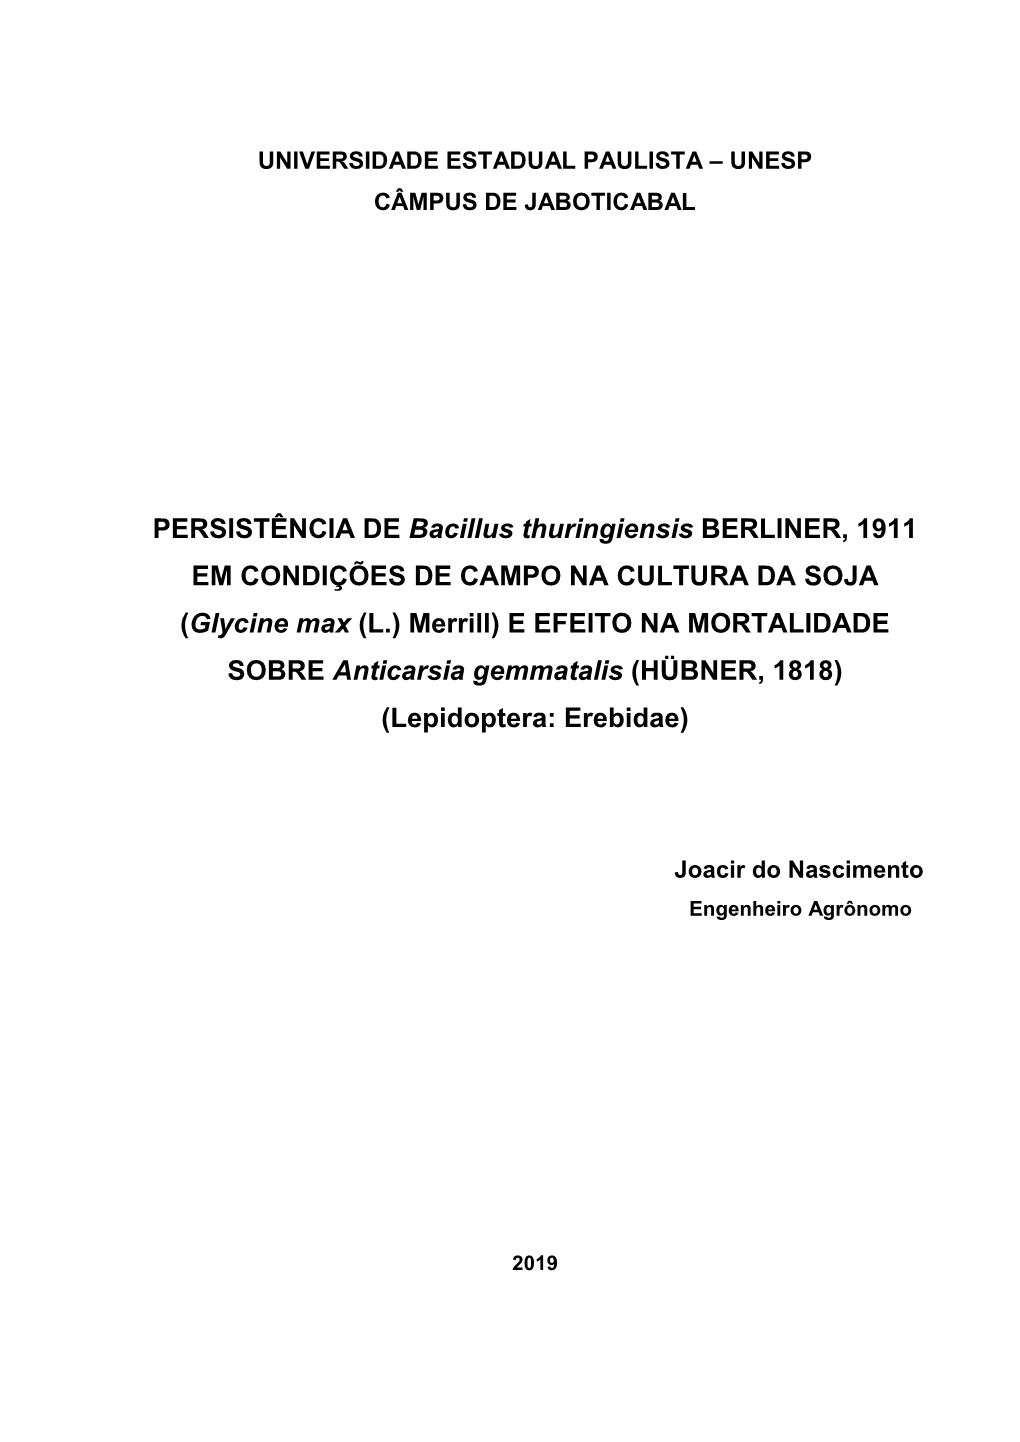 PERSISTÊNCIA DE Bacillus Thuringiensis BERLINER, 1911 EM